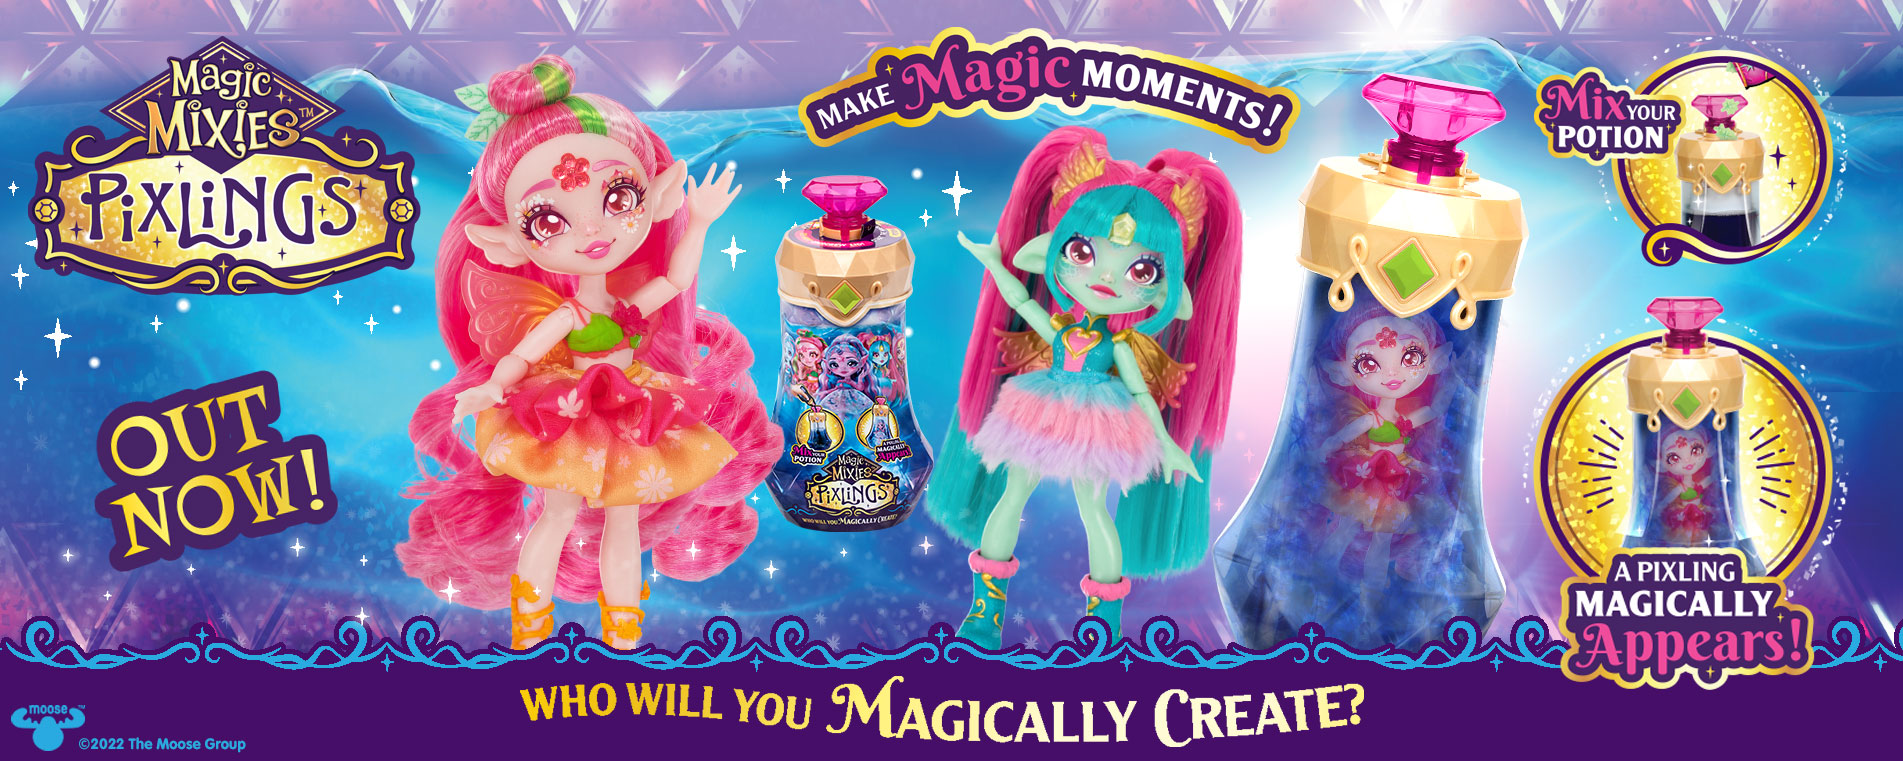 Magic Mixes Pixlings Dolls S2